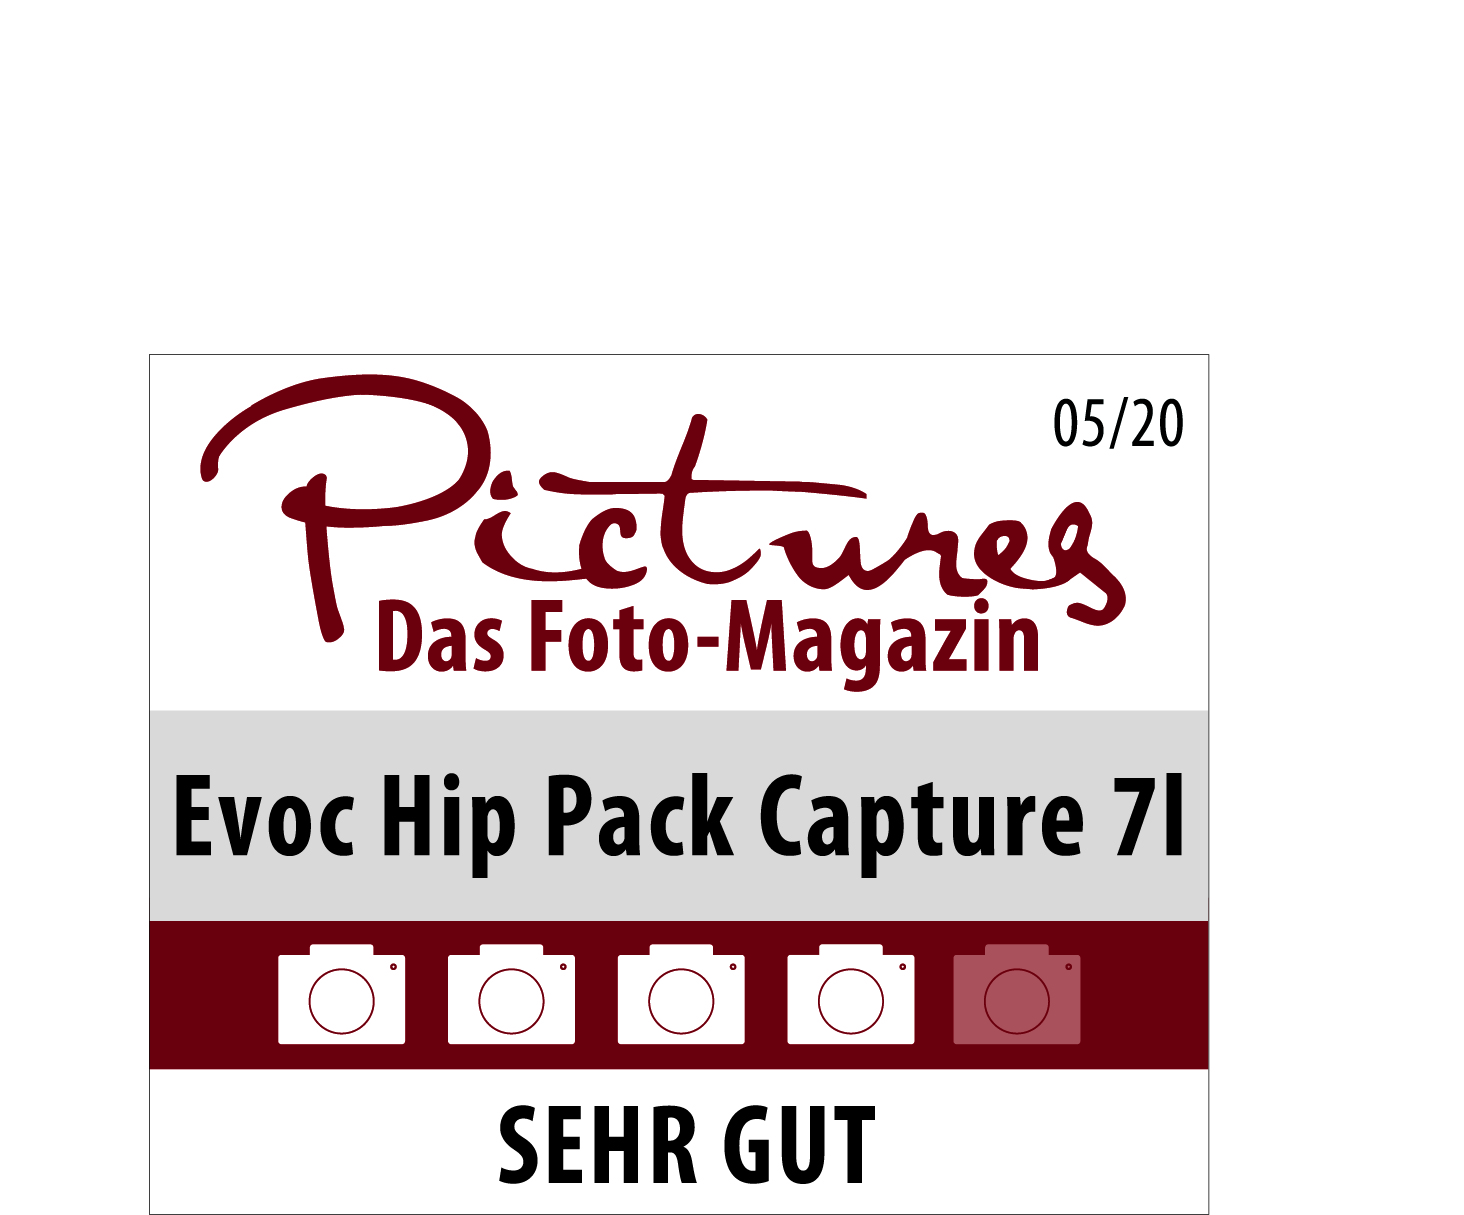 Pictures Foto-Magazin vergibt Note Sehr gut für EVOC Hip Pack